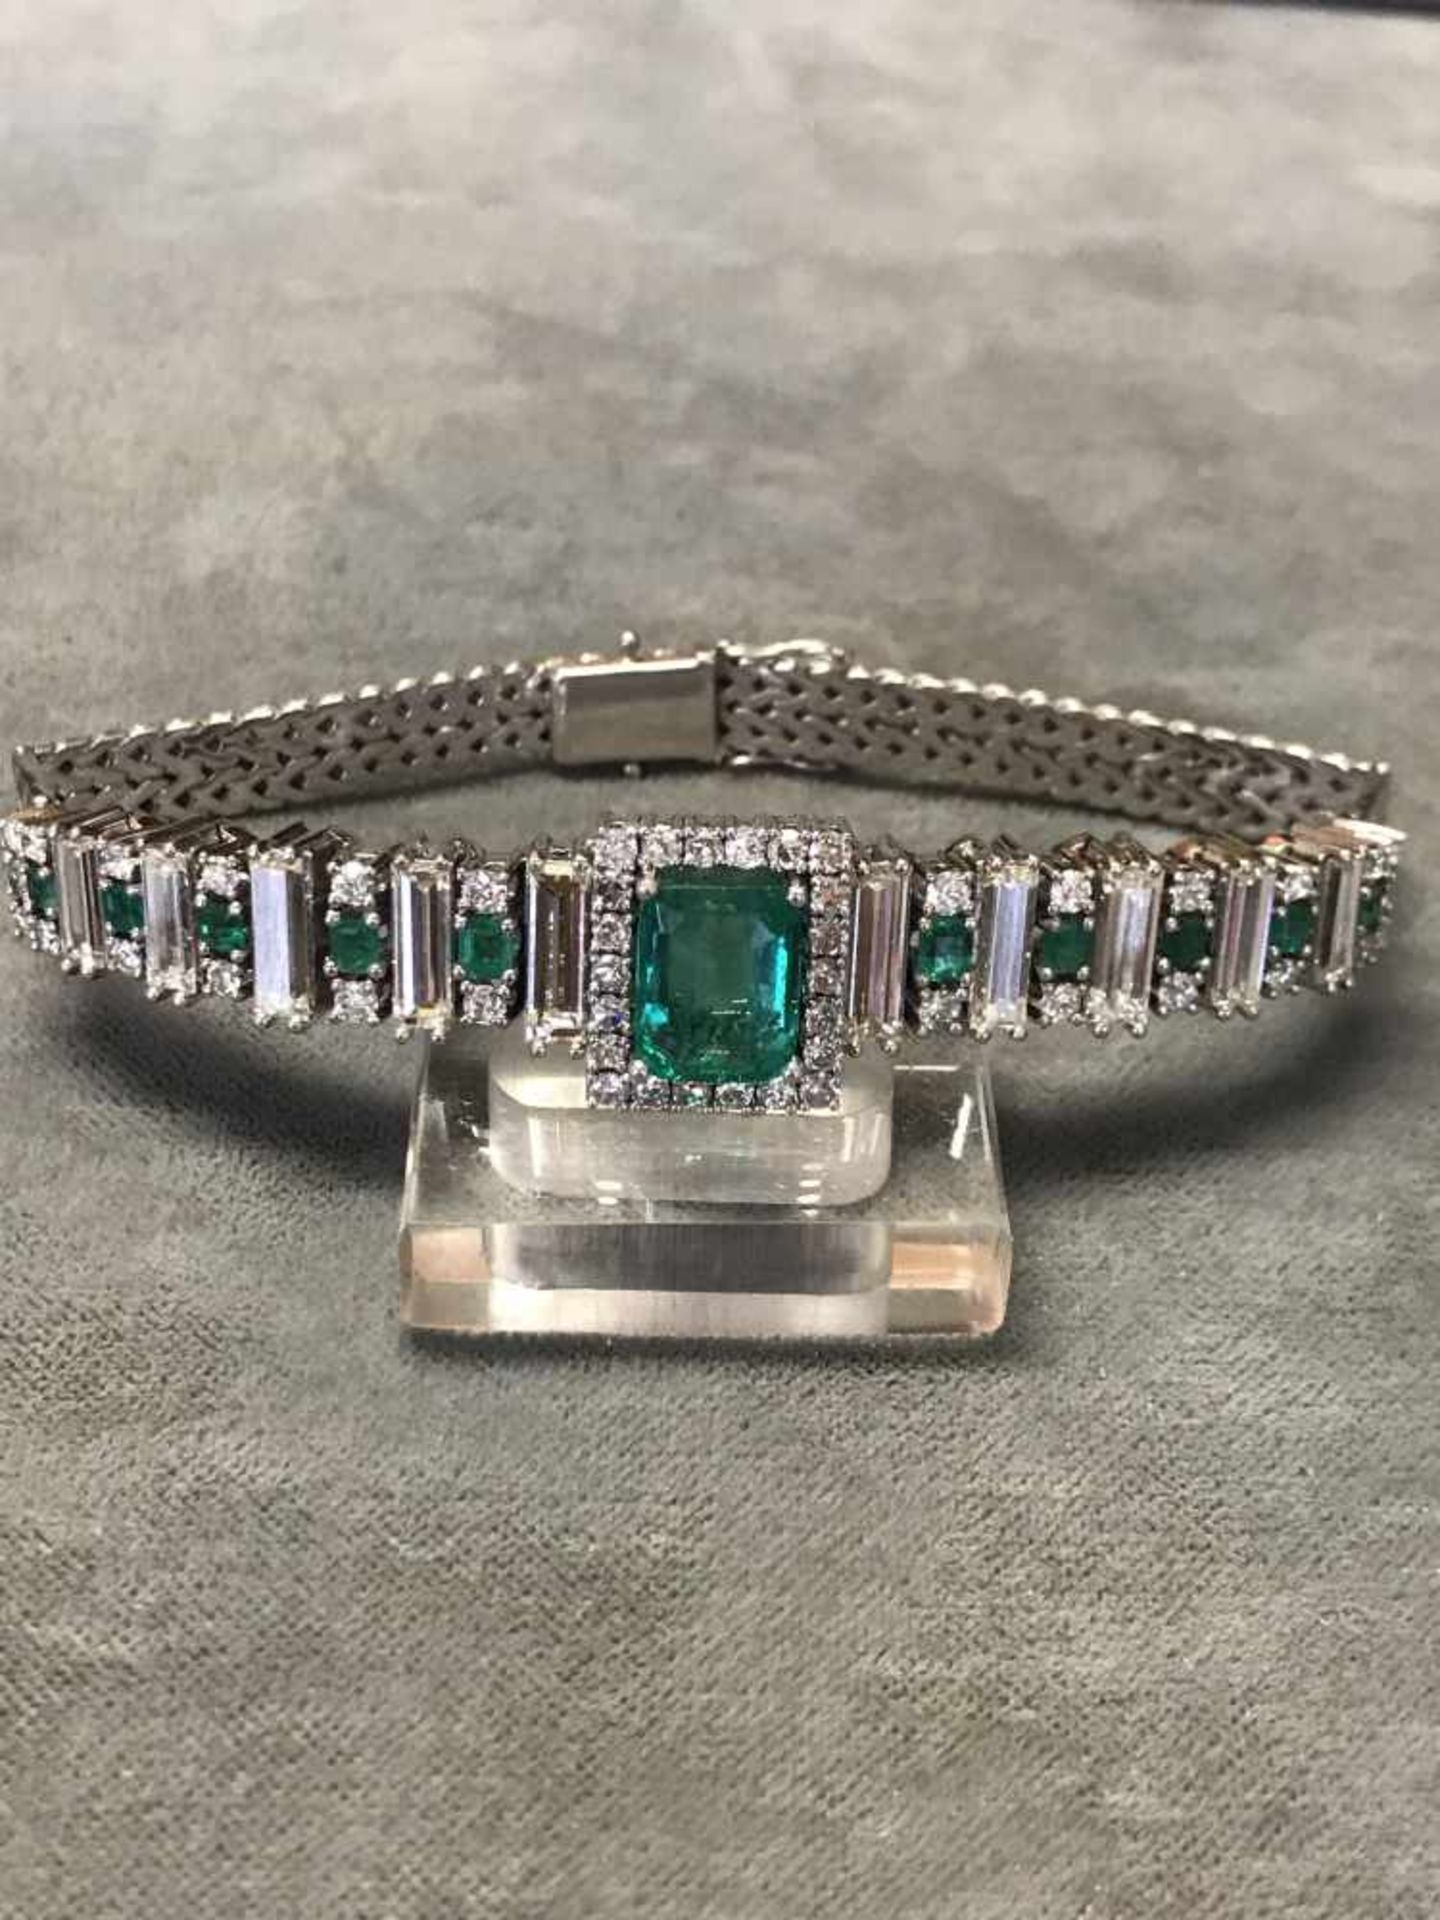 Smaragdband mit Diamanten, 750er WG, mittig spektakulärer natürlicher Smaragd (wie bei Smaragden - Image 5 of 6